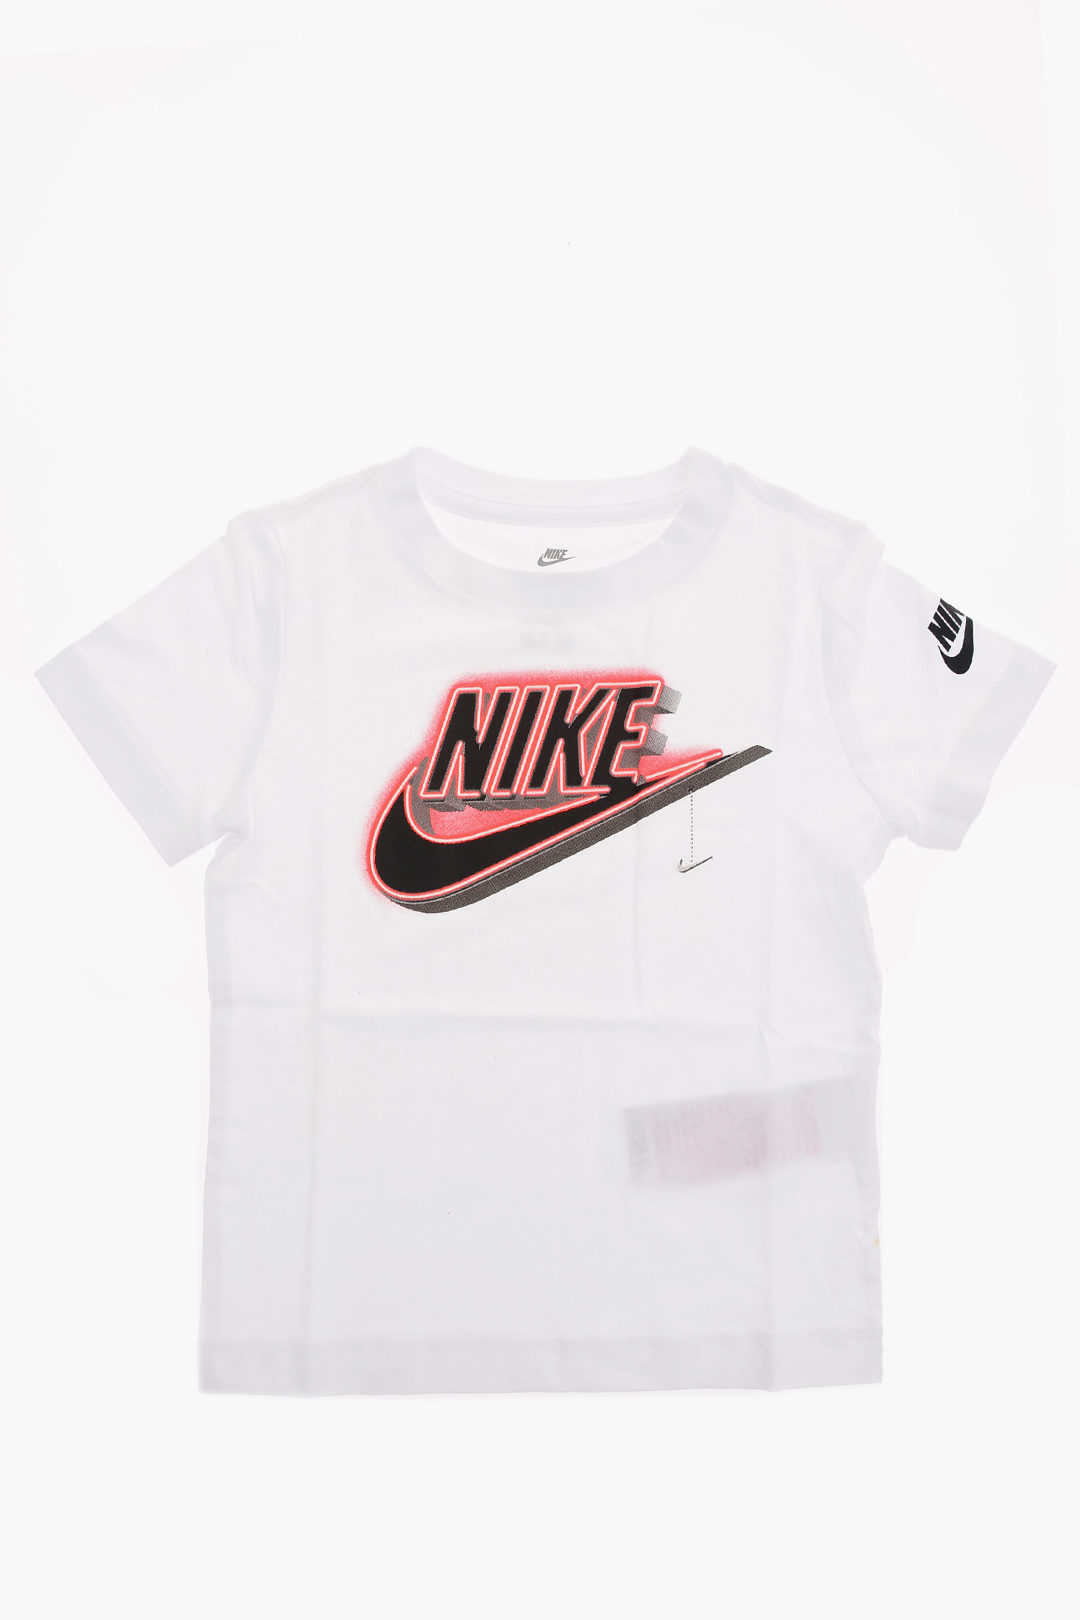 eiwit Preventie Bouwen op Nike KIDS Jersey t-shirt GLOW IN THE DARK boys - Glamood Outlet